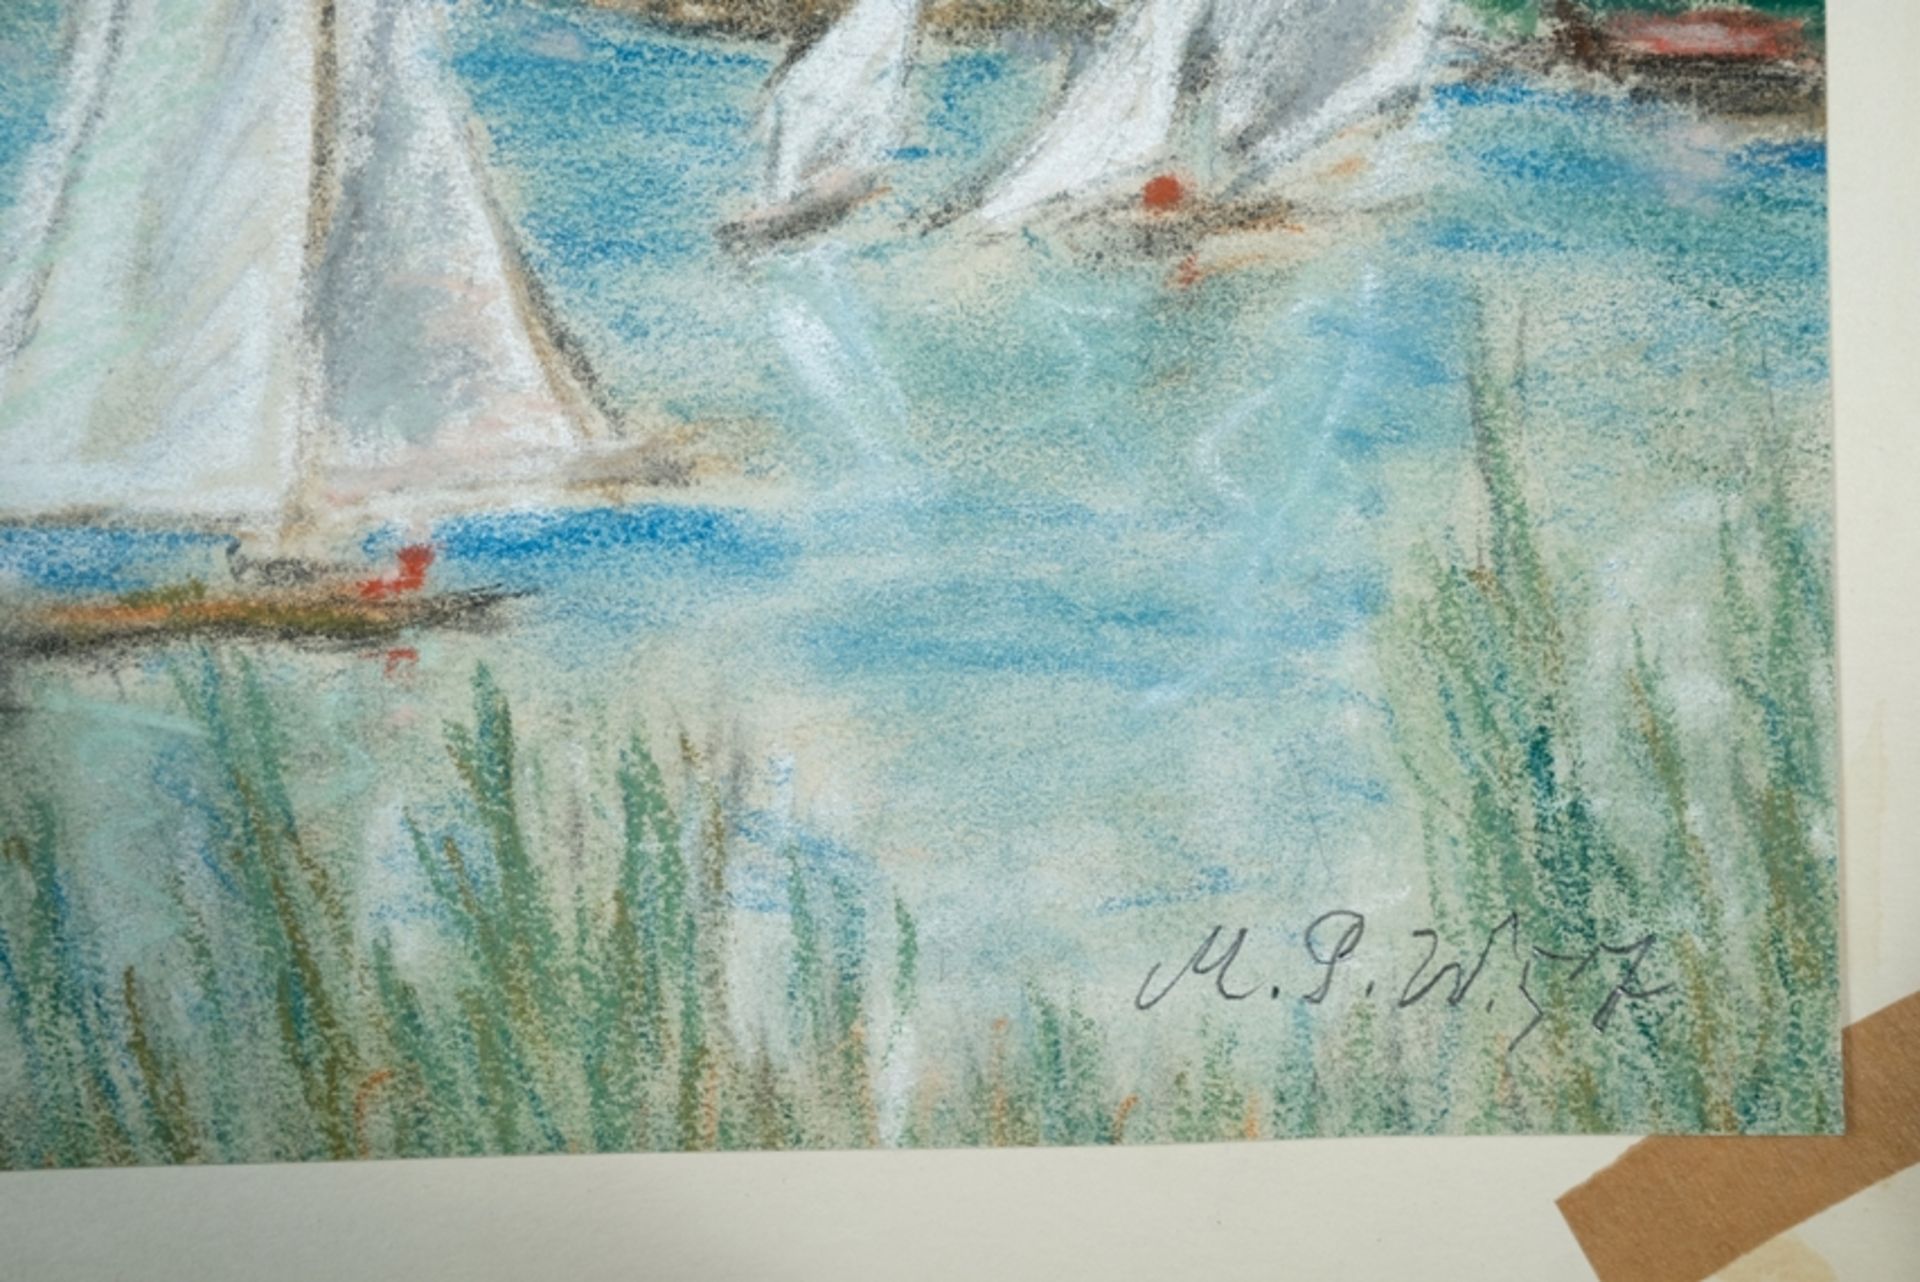 Peifer-Watenphul, Max (1896-1976) Bodensee, Farbzeichnung auf Papier, 1957. - Bild 2 aus 3